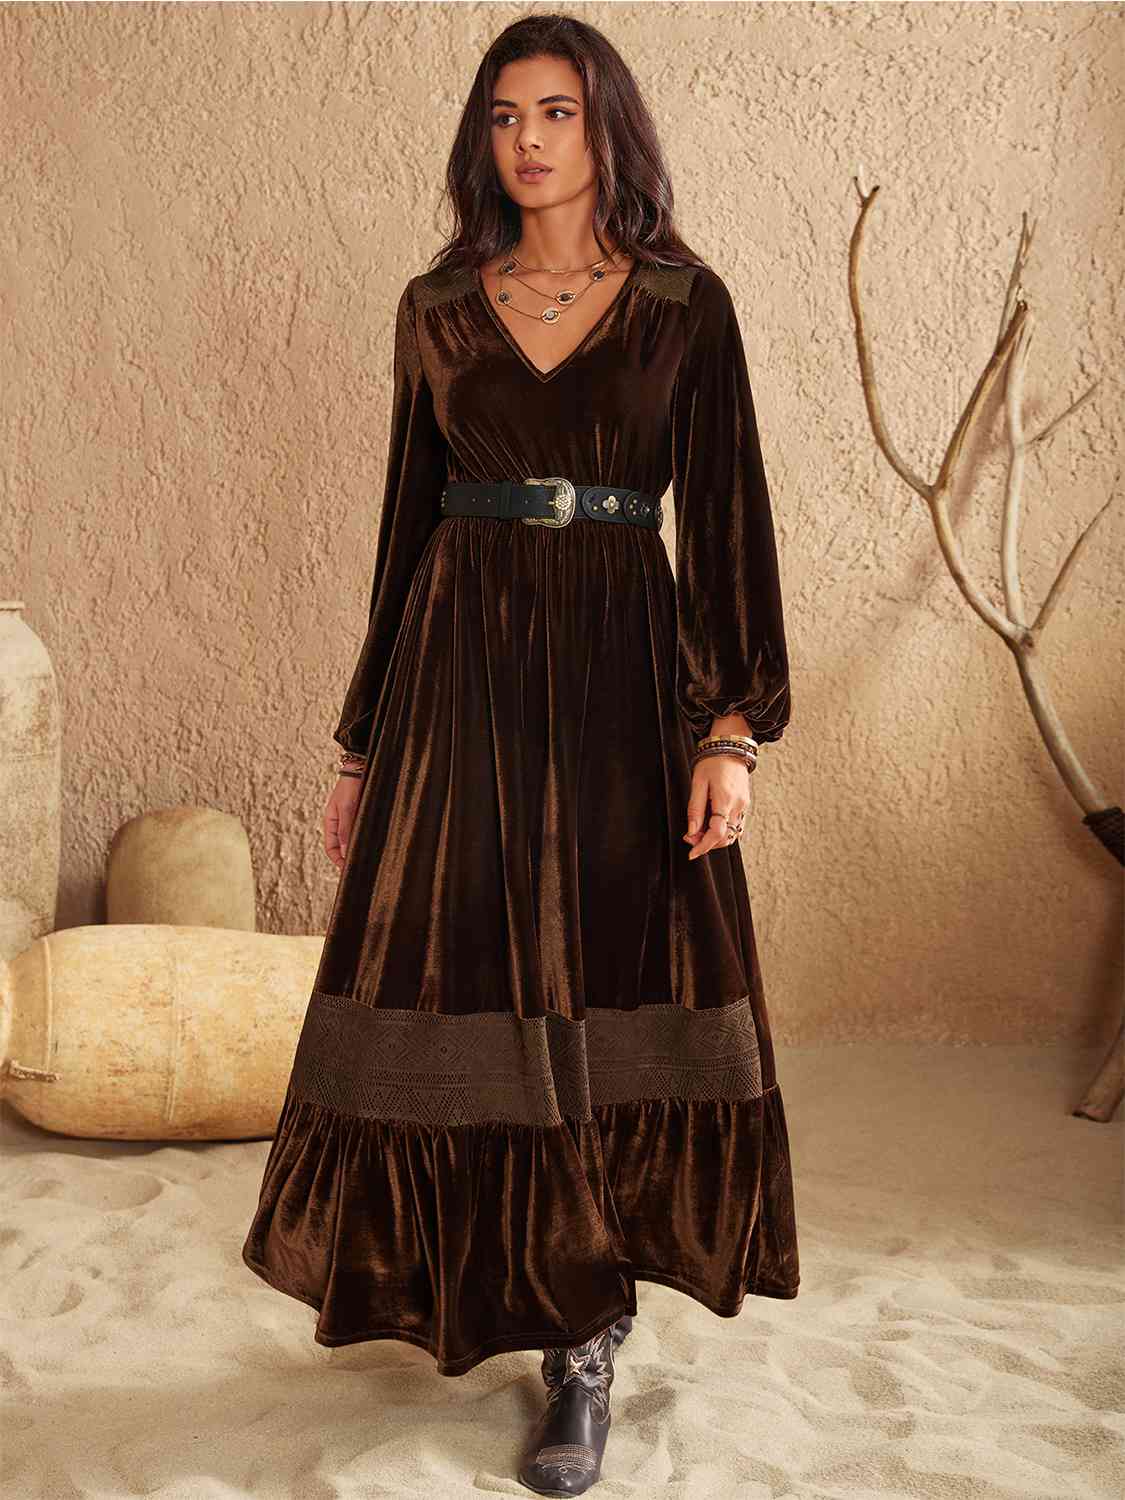 Chocolate Brown Velvet trim Ruffled V-Neck Long Sleeve Dress